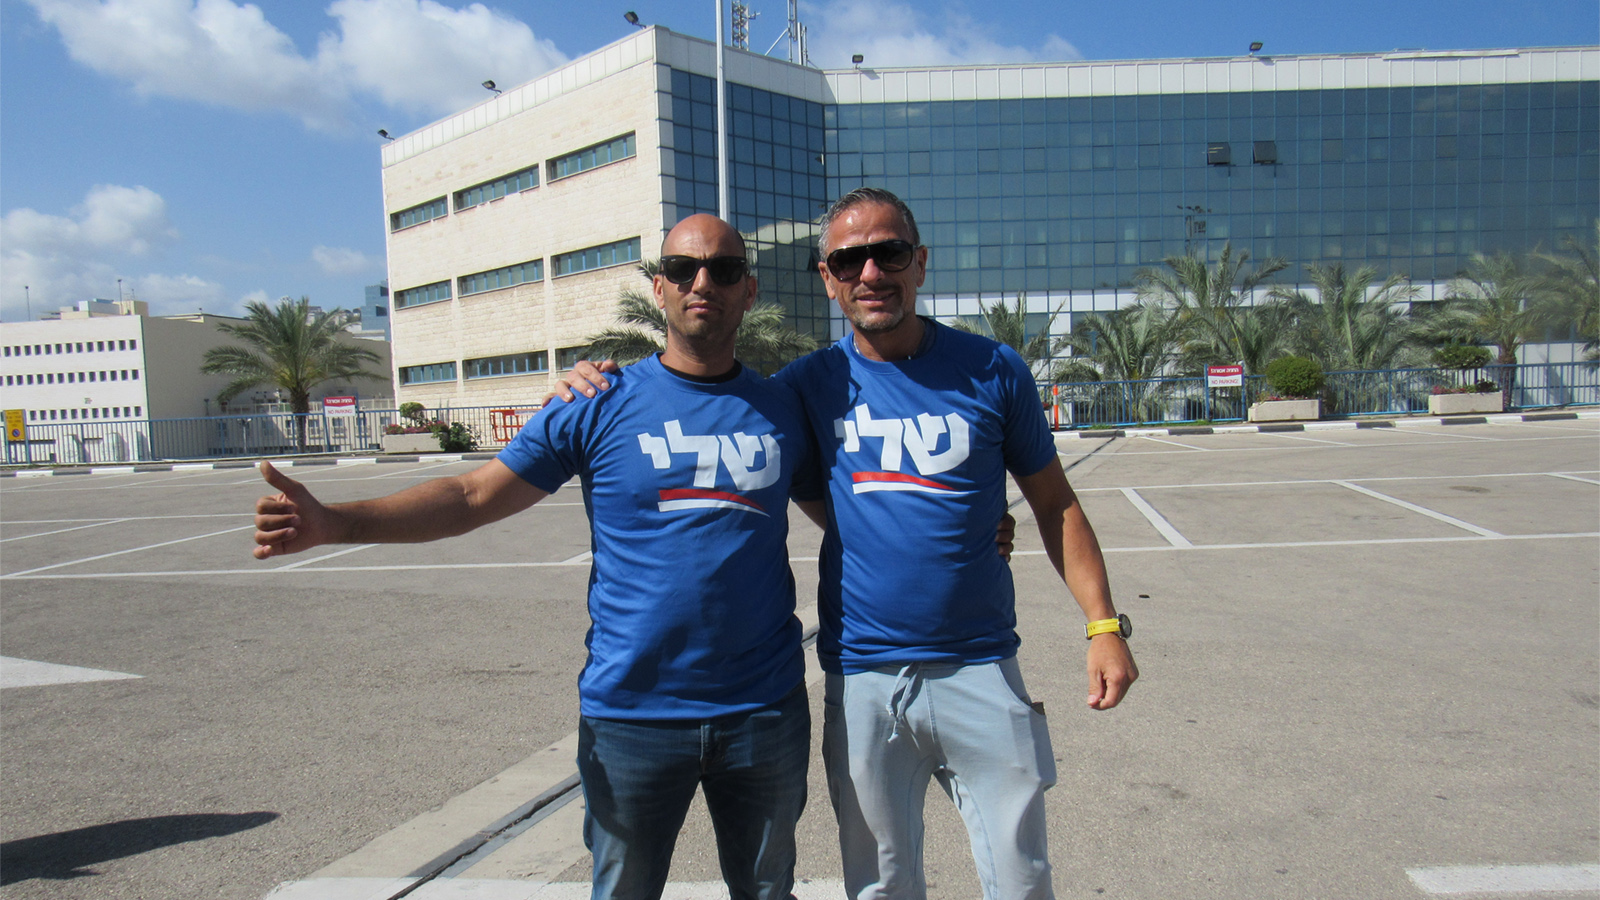 תומכי יחימוביץ' בנמל חיפה, דוד גורטס (מימין) ואייל מור יוסף: "זו הצבעת מחאה". צילום: ארז רביב